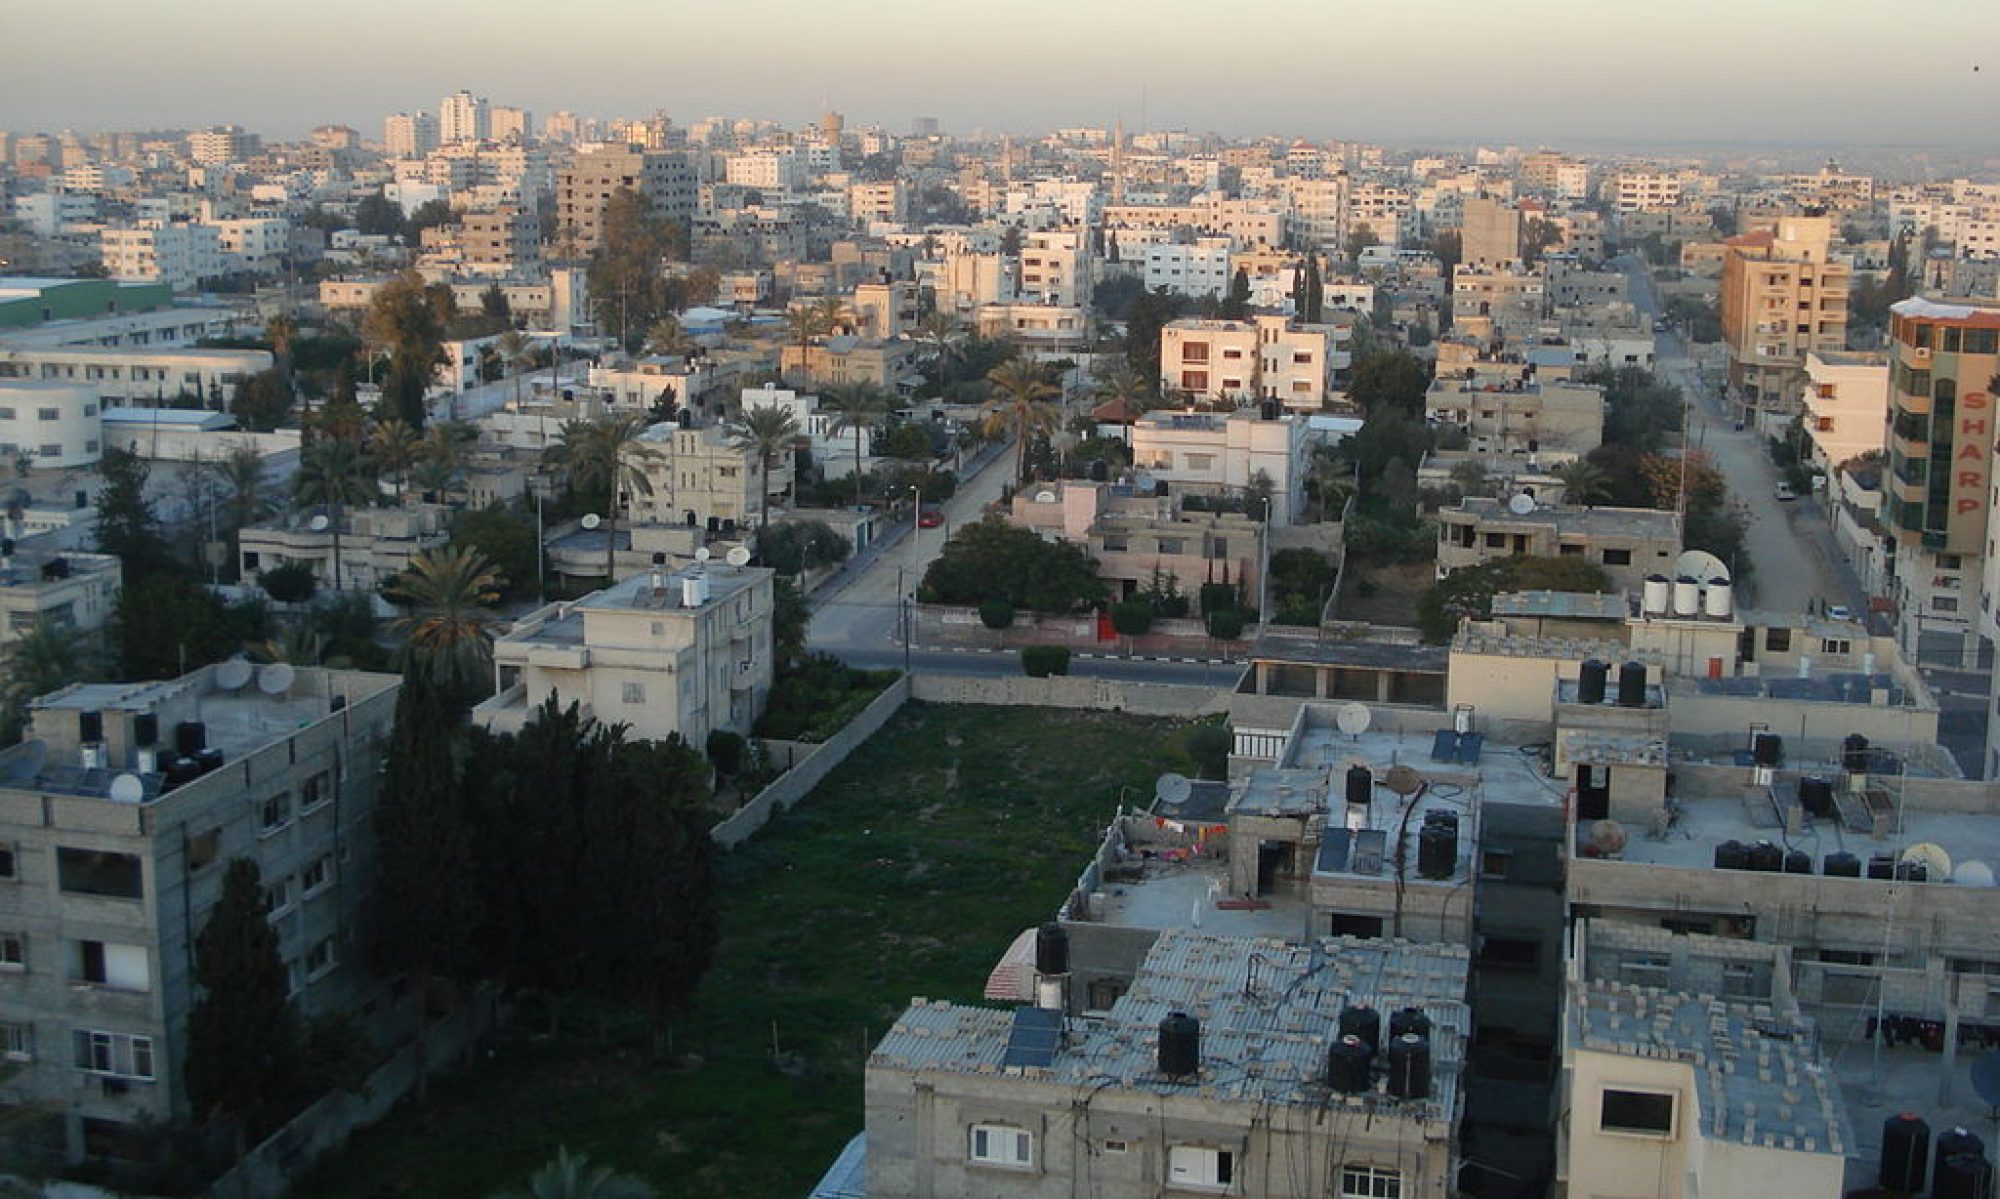 GAZA DEVE VIVERE PERCHE’ VIVA LA PALESTINA – COMUNICATO STAMPA